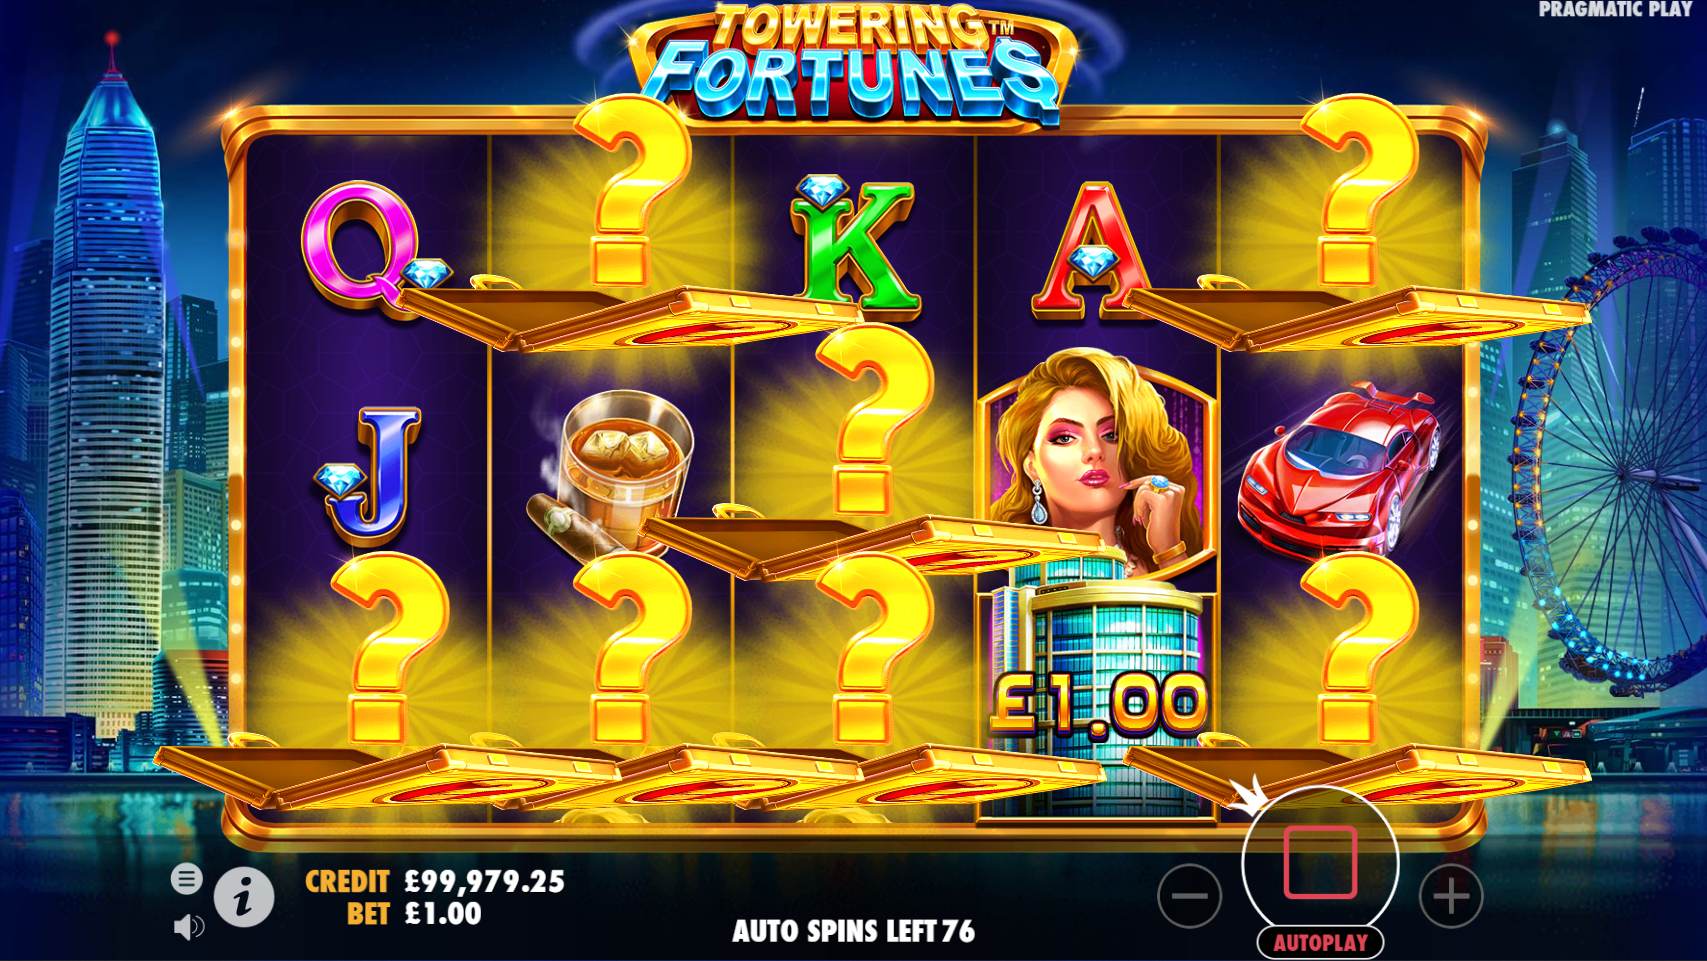 Towering Fortune pragmatic play slot online demo